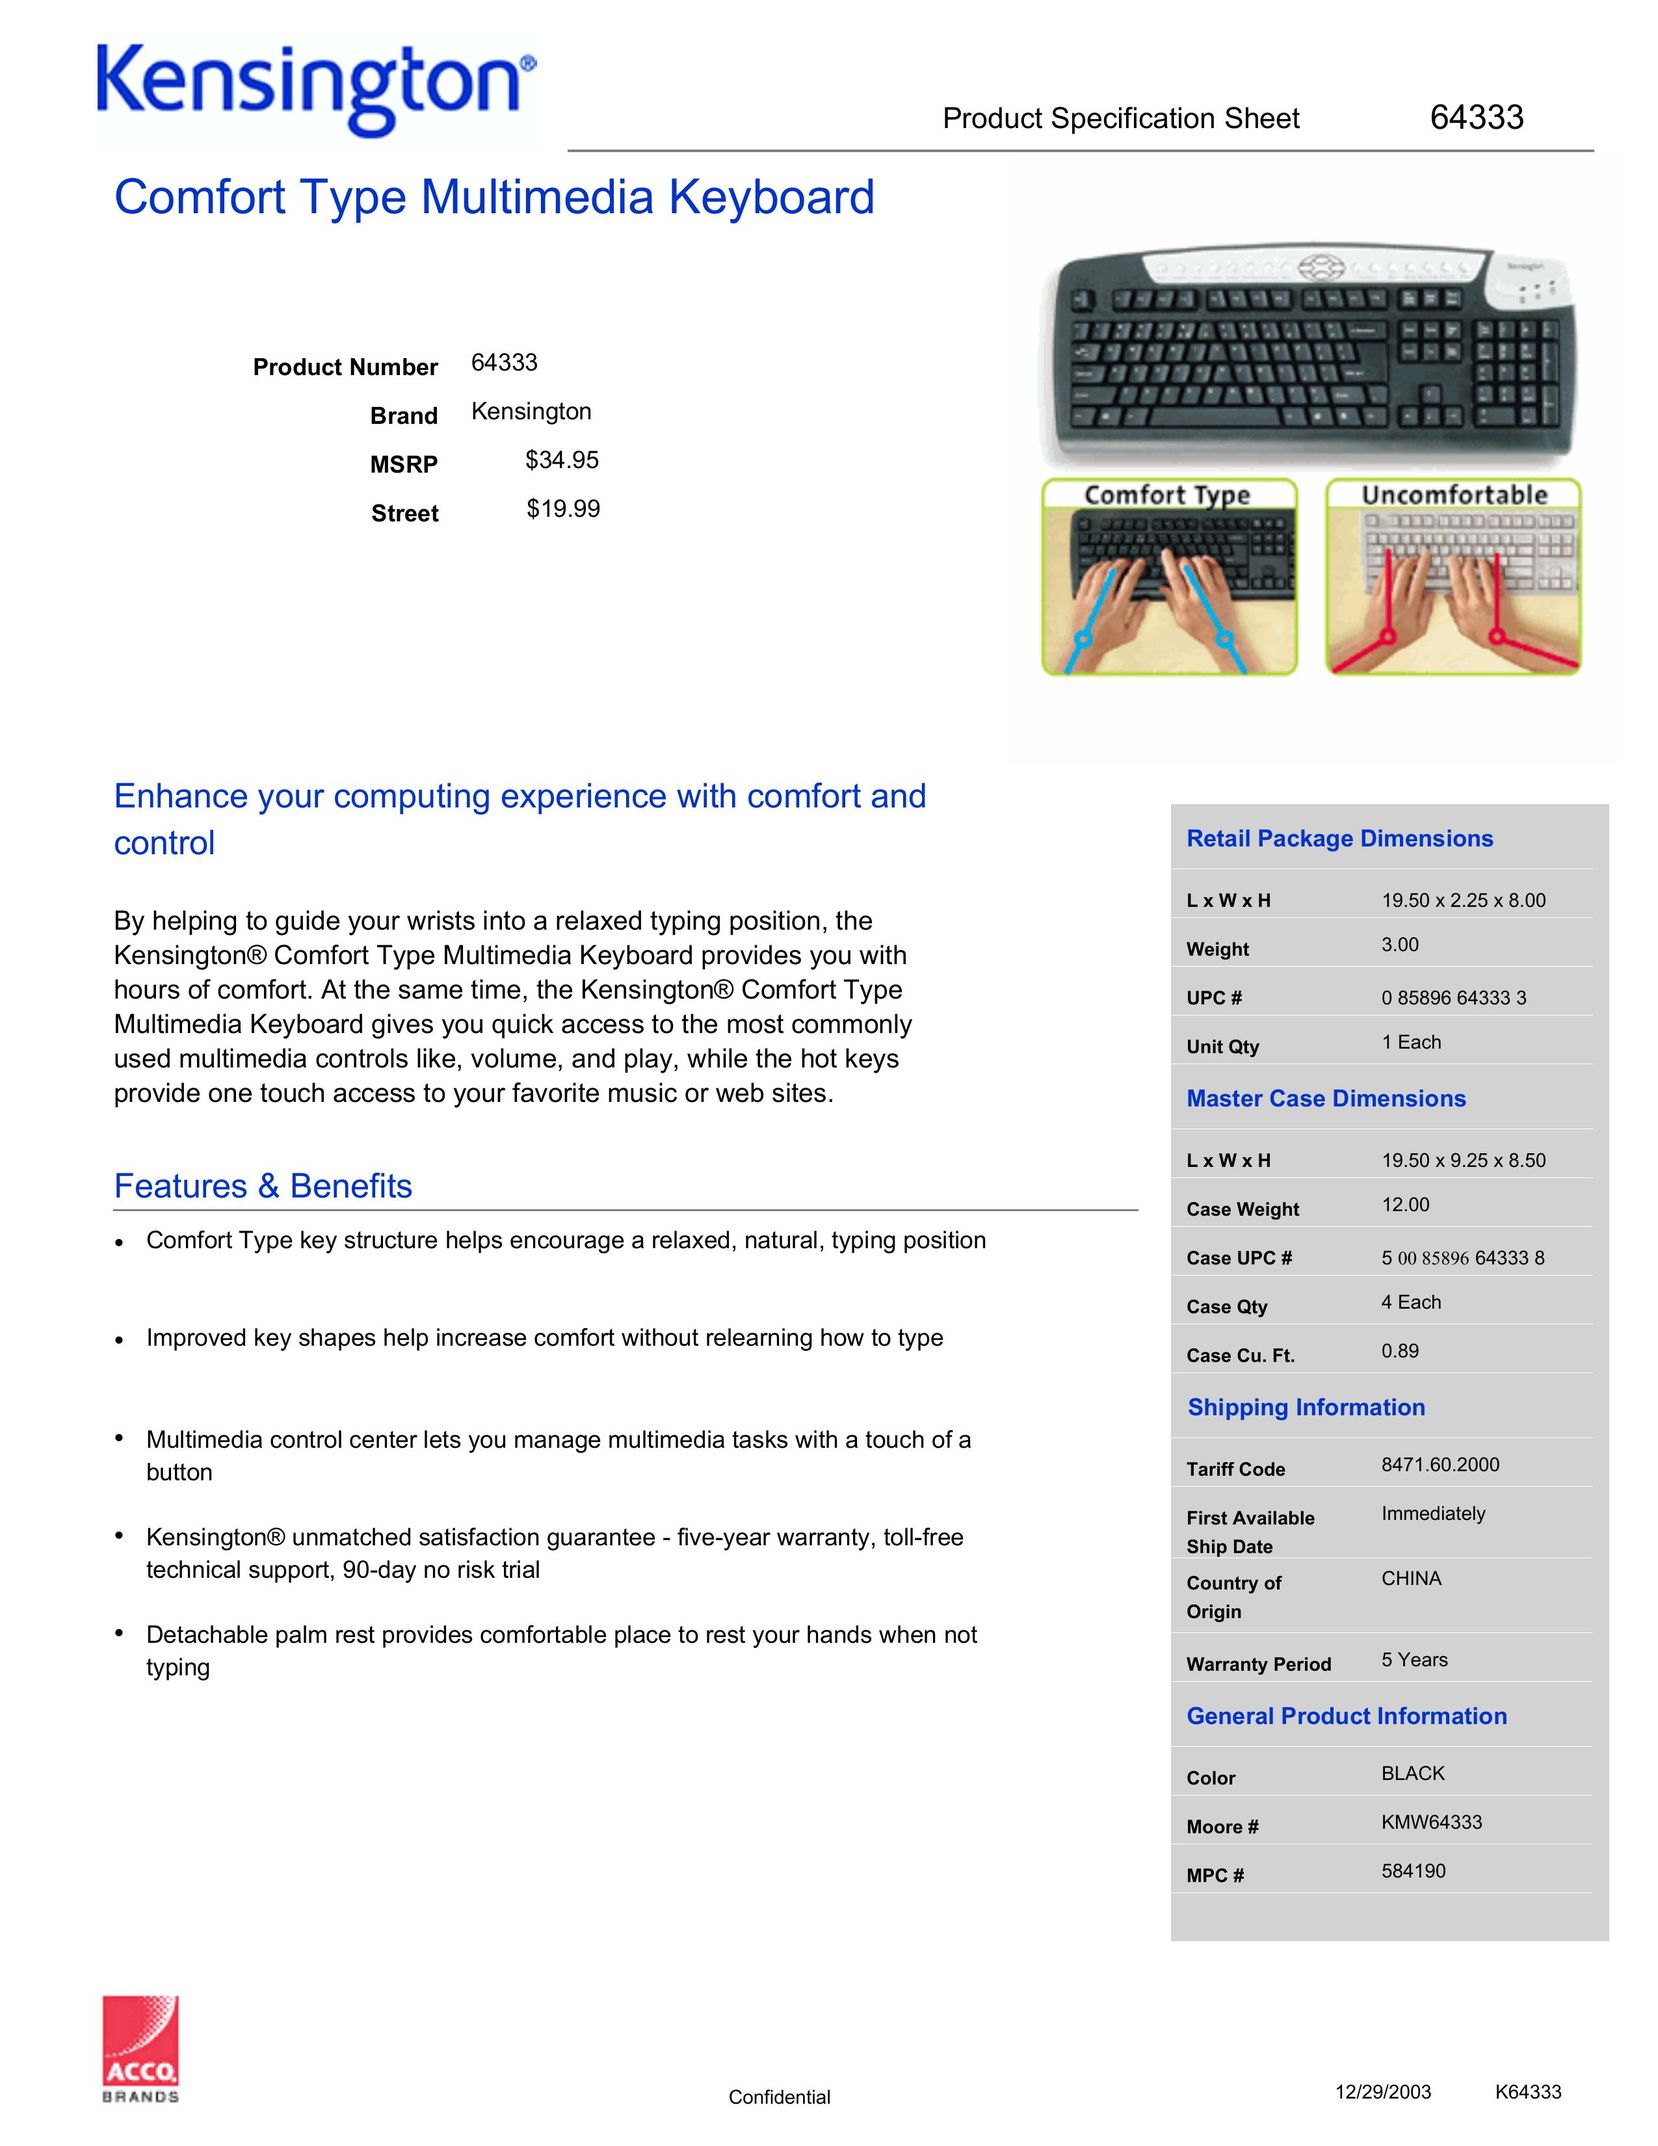 Kensington 64333 Video Game Keyboard User Manual